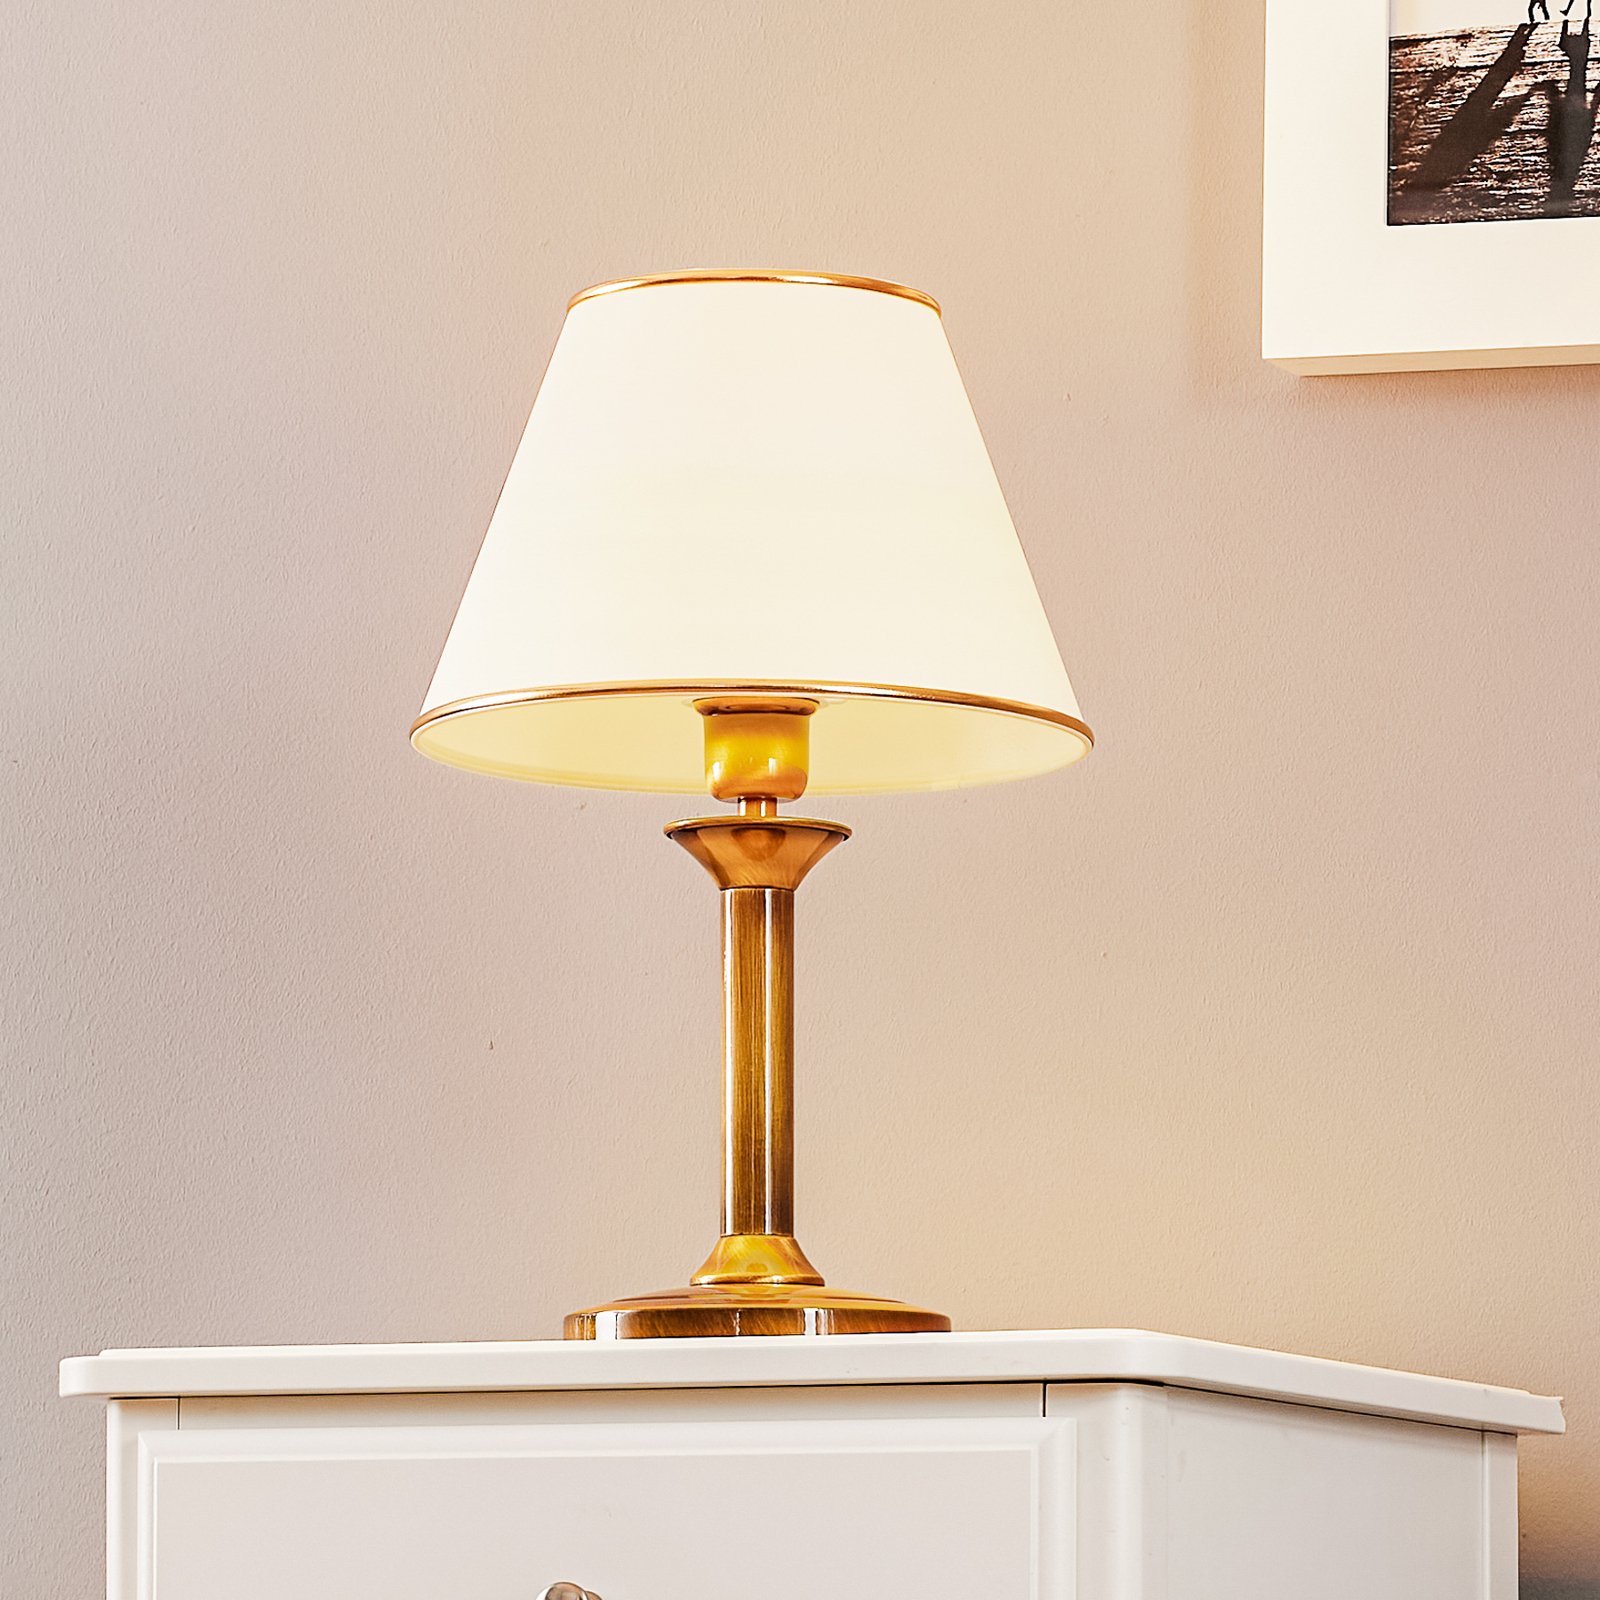 Birmingham asztali lámpa patinázott Ø 27 cm